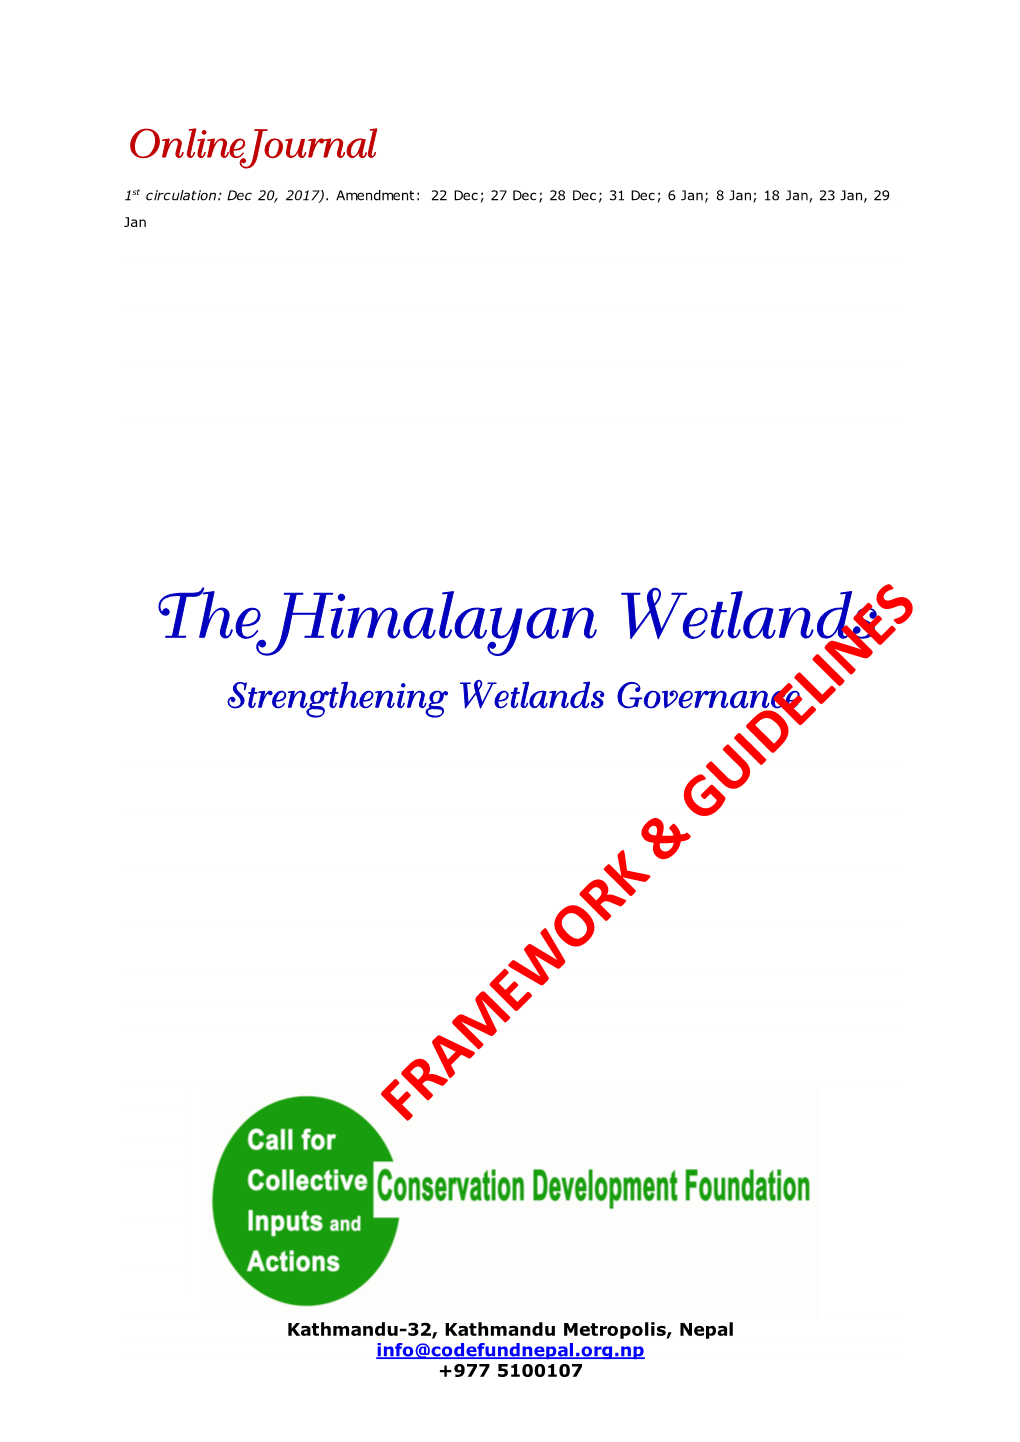 The Himalayan Wetlands Journal